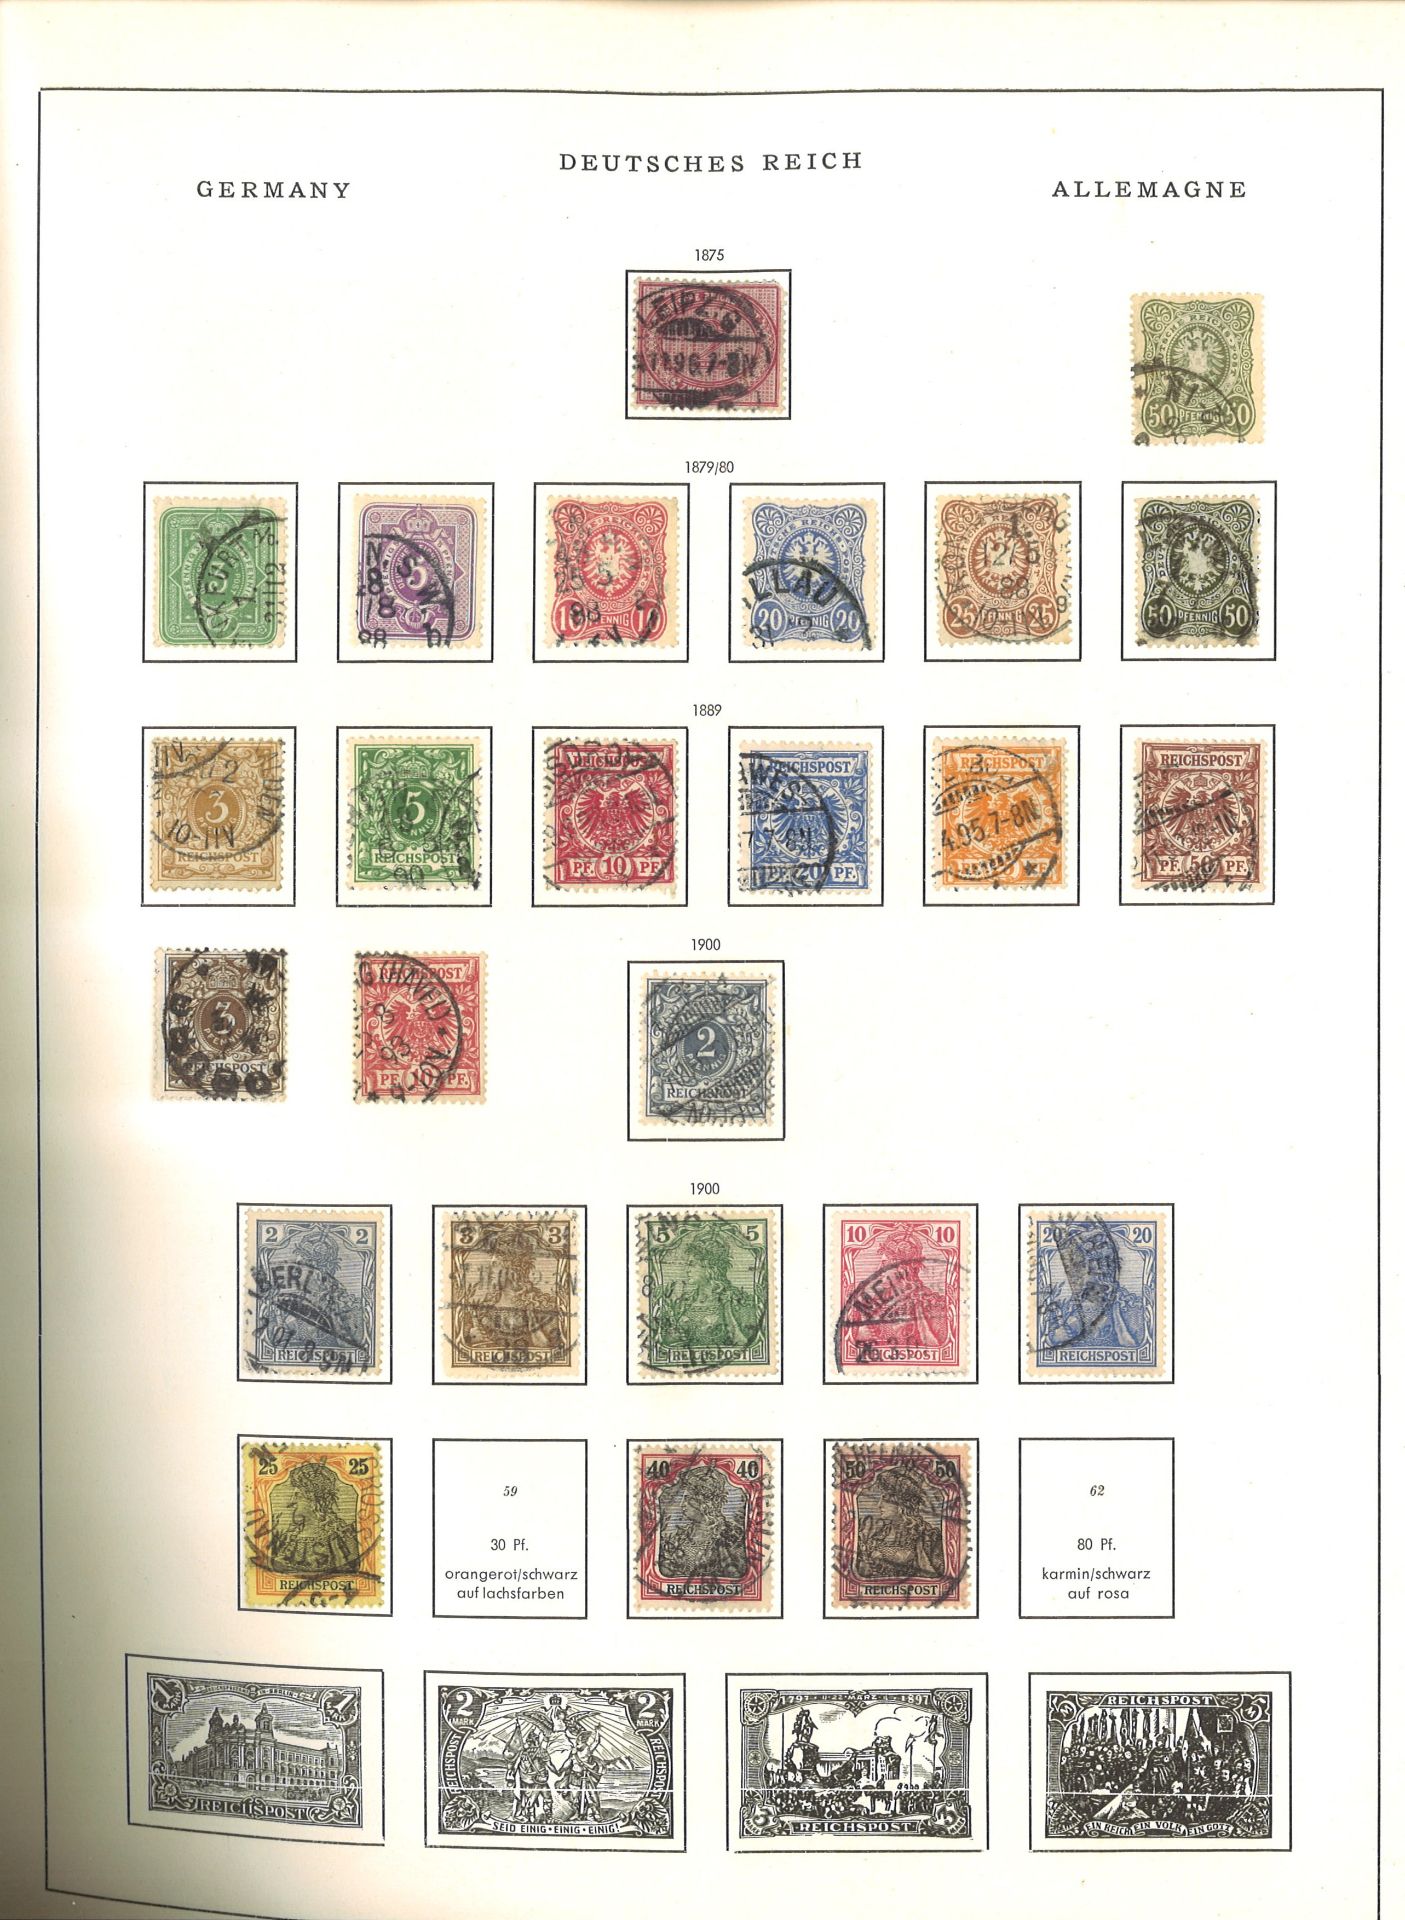 Deutschland, dickes Schwaneberger Briefmarken Album 1964, dabei Altdeutschland, Deutsches Reich, - Image 4 of 18